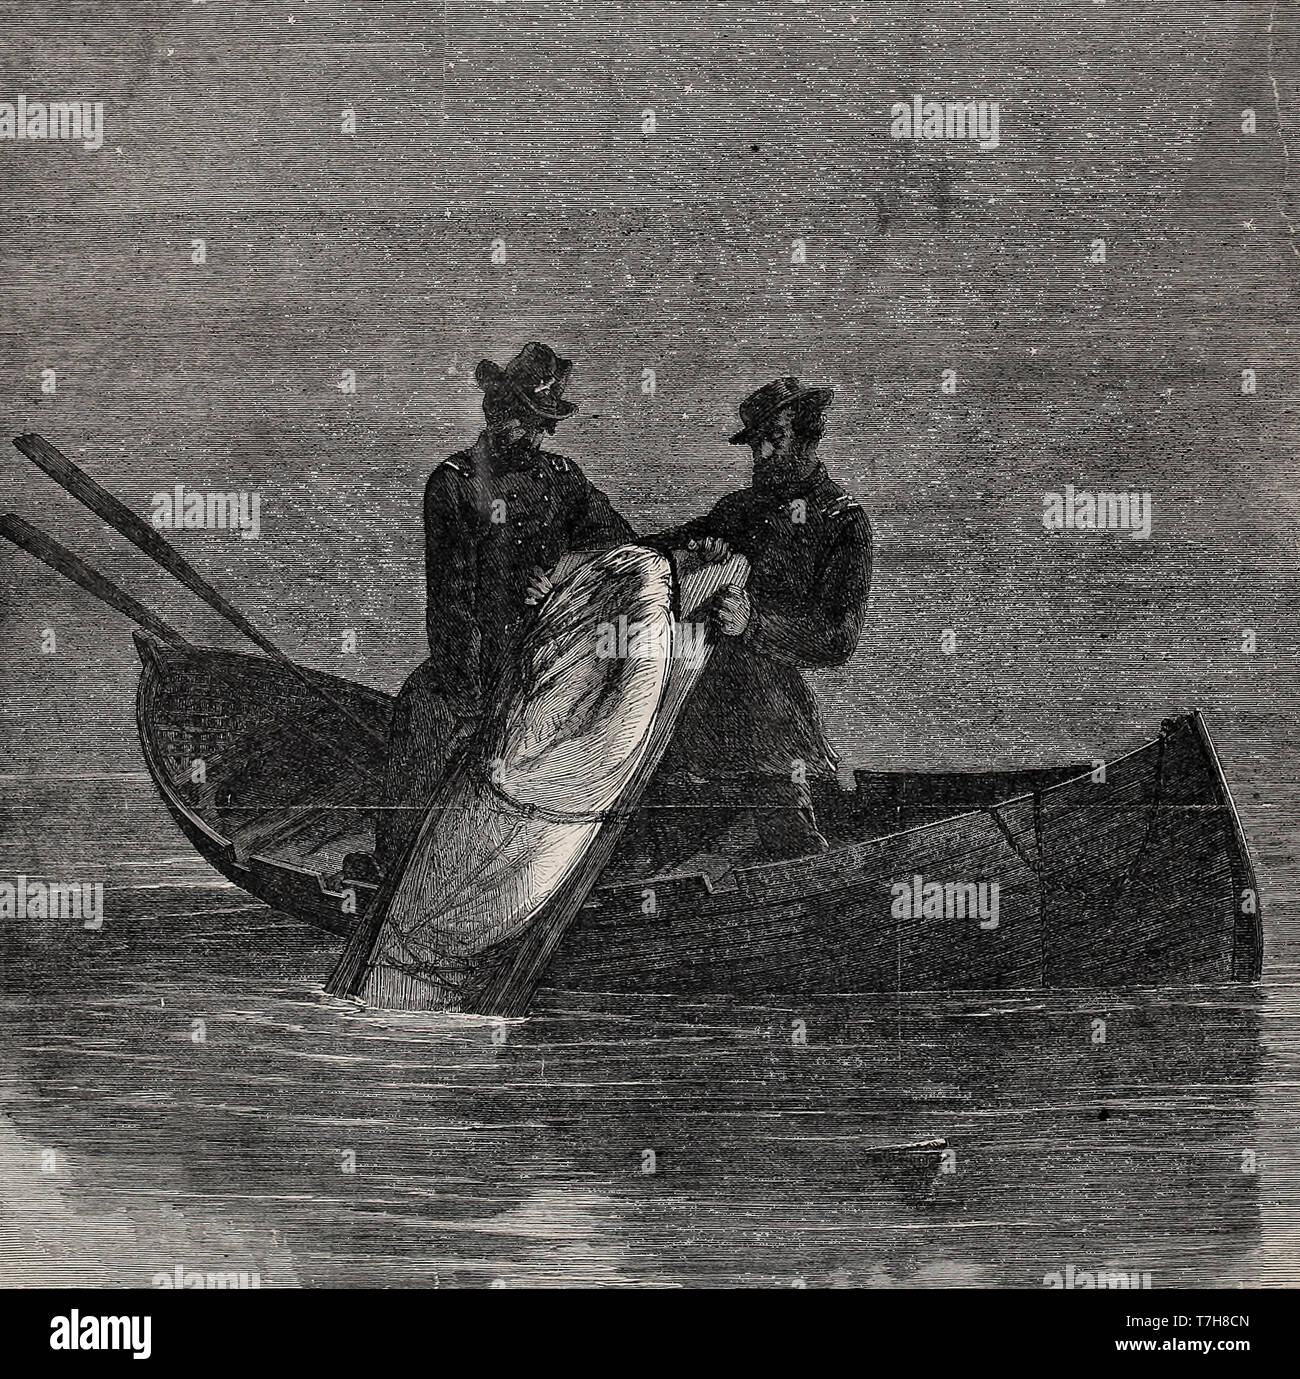 La disposición final de John Wilkes Booth cuerpo, vertidos en el río Potomac - Esta fue publicada en 1865, pero no era realmente cierto Foto de stock